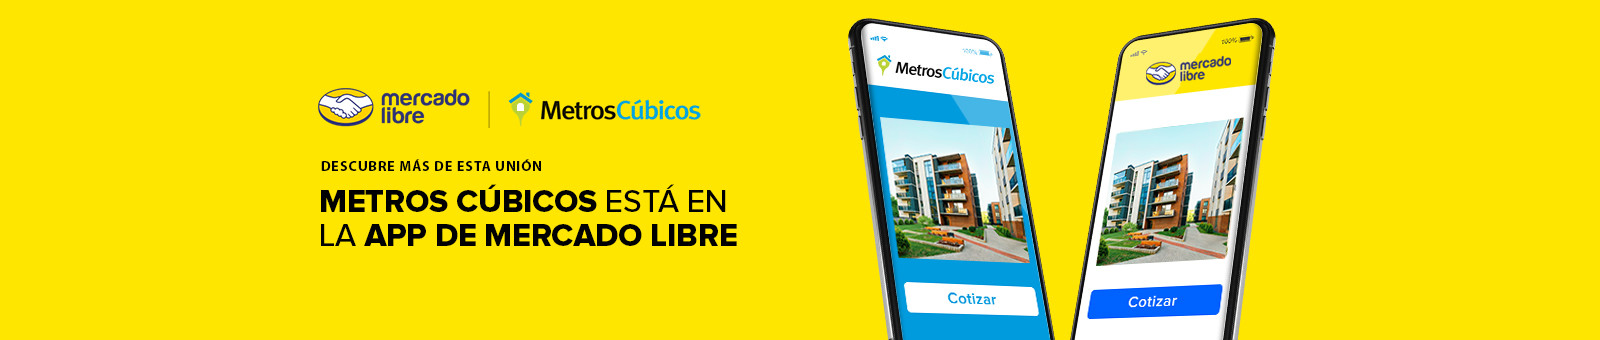 Metros Cúbicos y Mercado Libre 